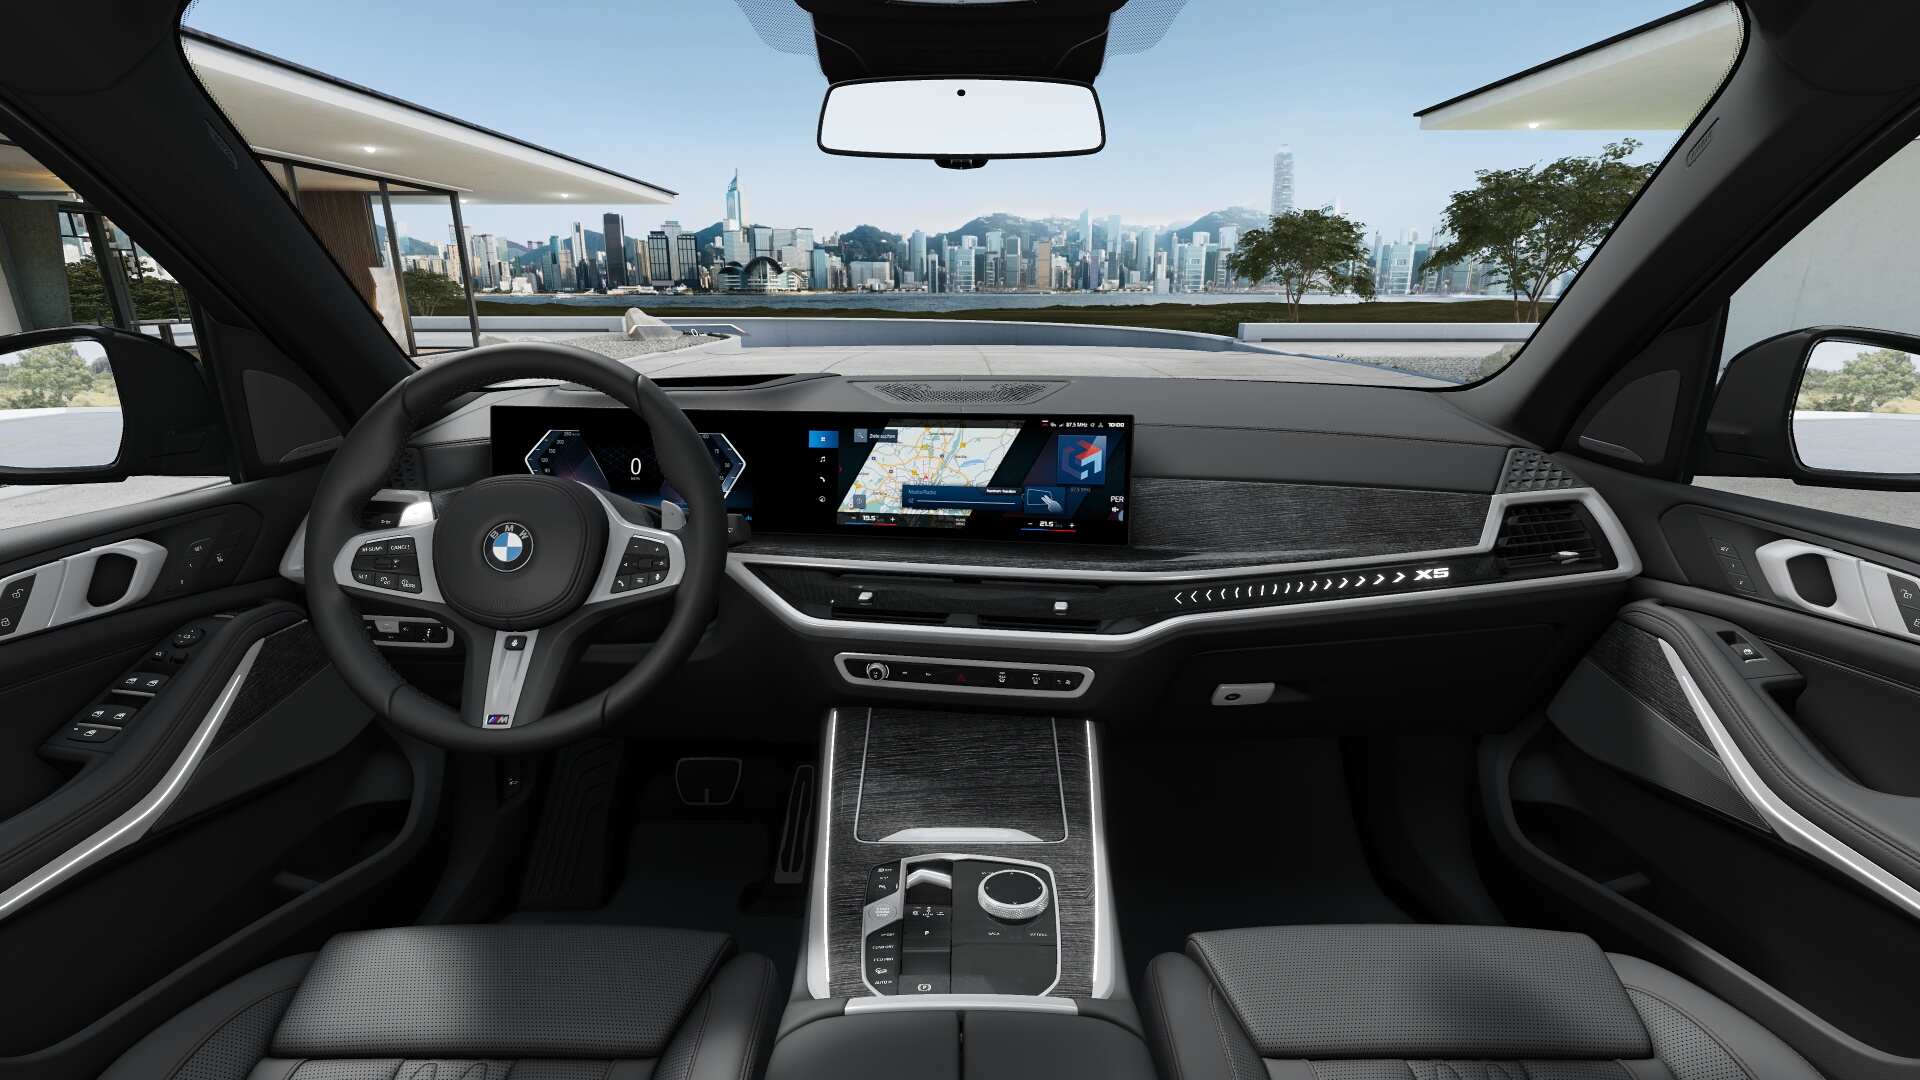 BMW X5 40d xDrive Msport | nové auto skladem | ihned k předání | FACELIFT | sportovně luxusní naftové SUV | maximální výbava | skvělá cena | skladem a ihned k předání | objednání online | auto eshop AUTOiBUY.com